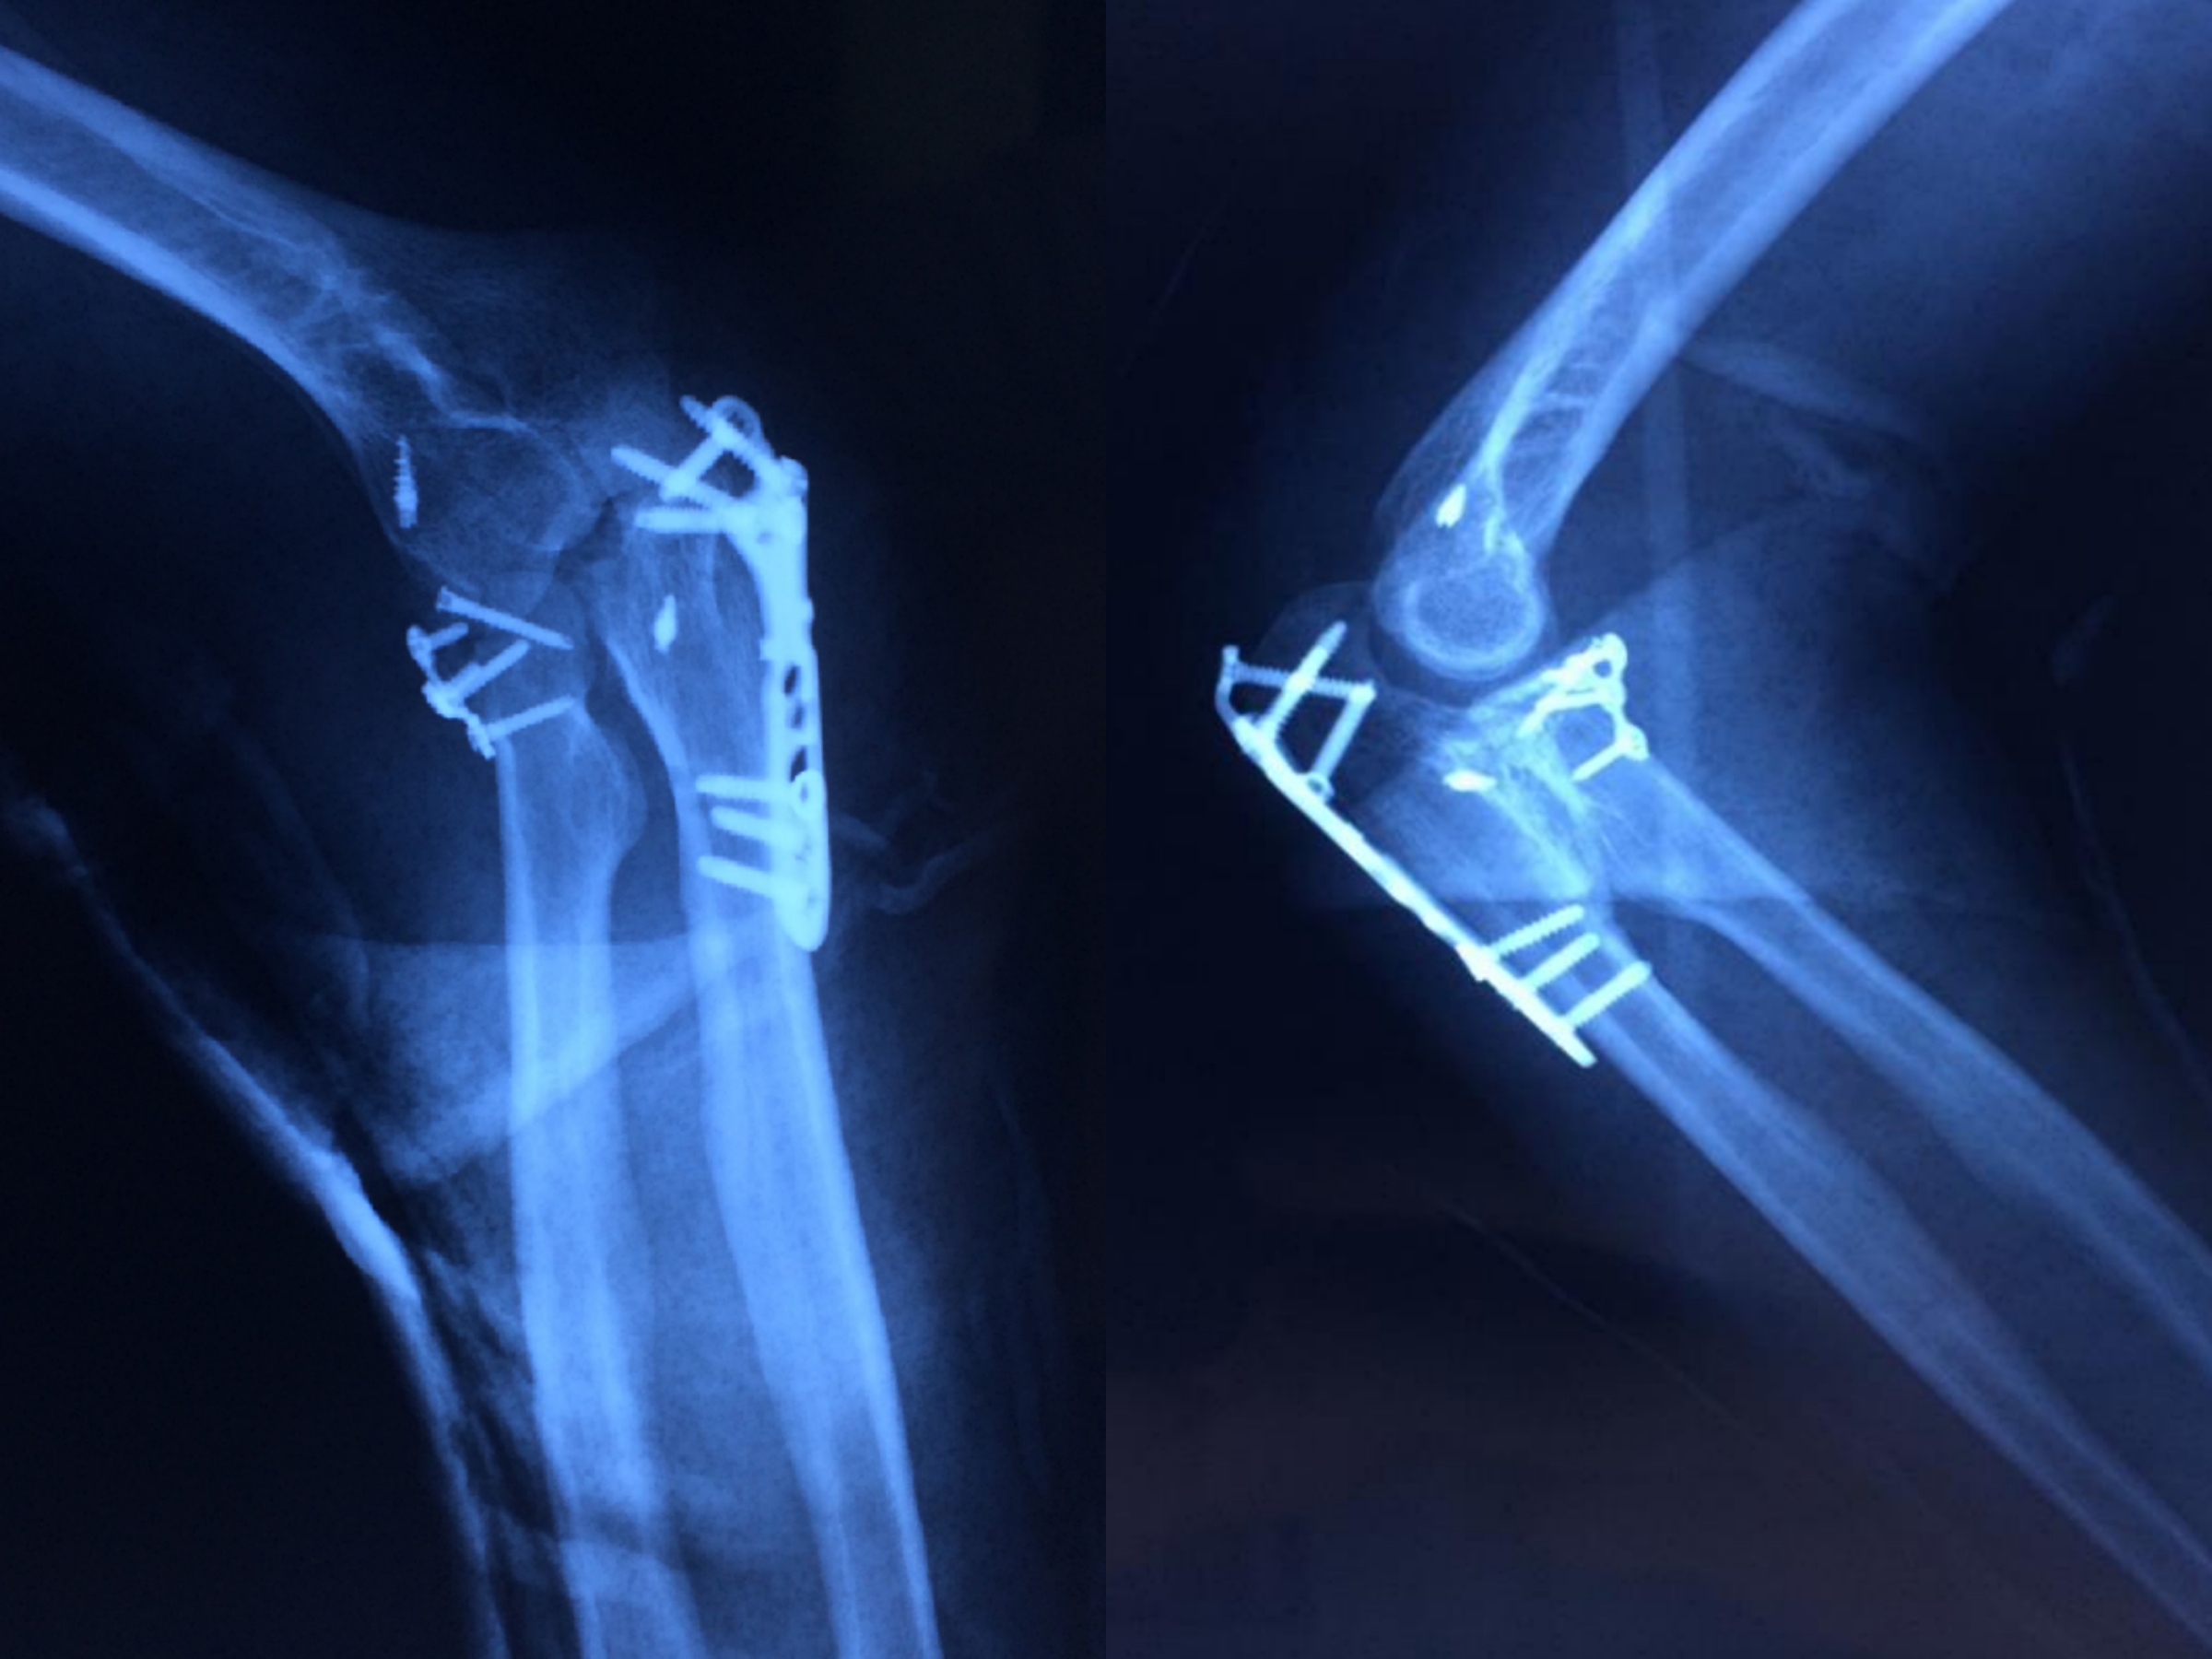 鹰嘴截骨入路人工全肘关节置换术的疗效研究|肱三头肌|肘关节|尺神经|关节炎|鹰嘴|截骨|-健康界